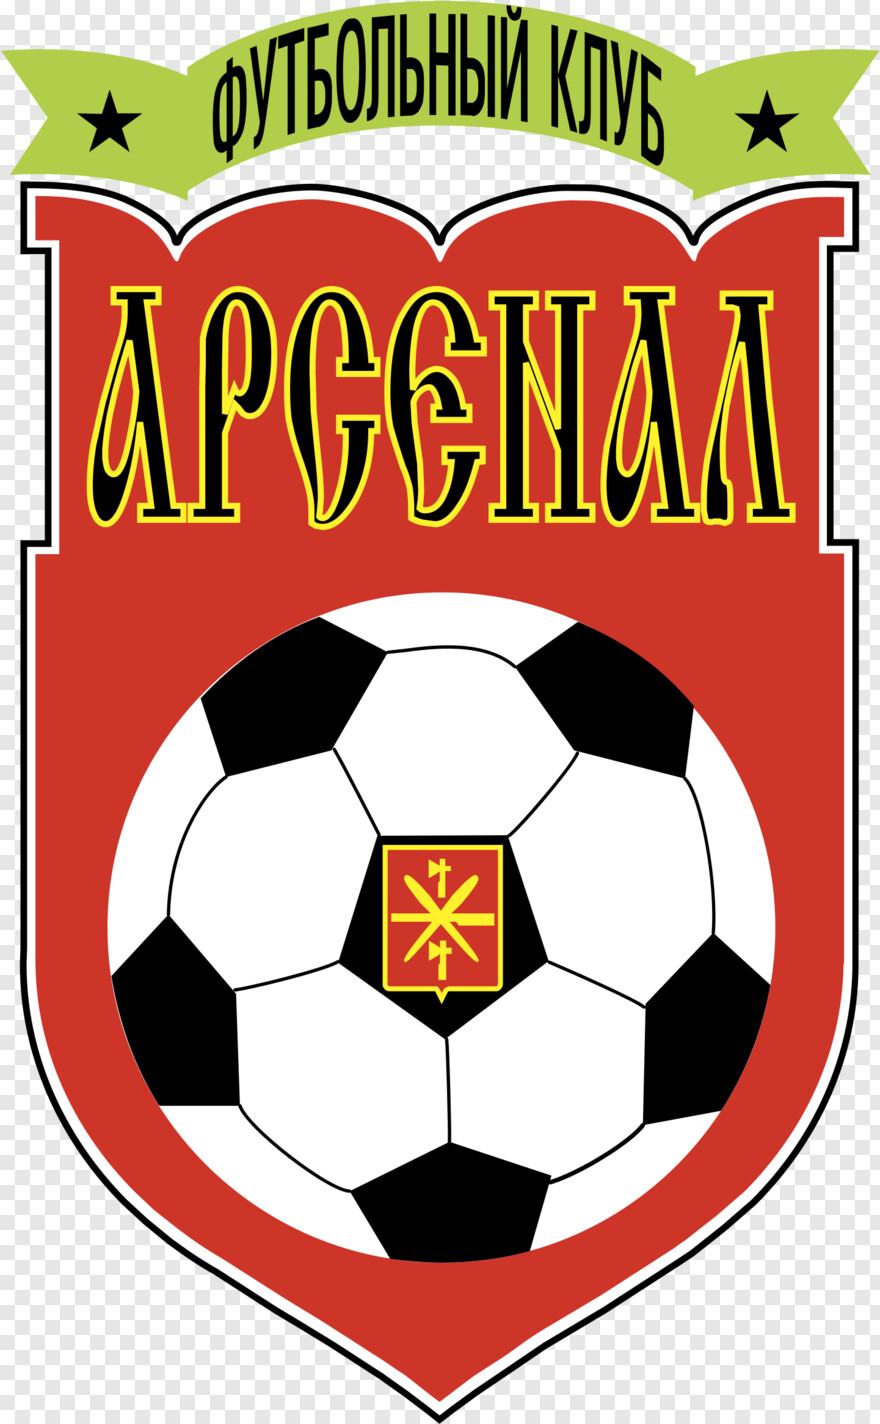 arsenal-logo # 535317